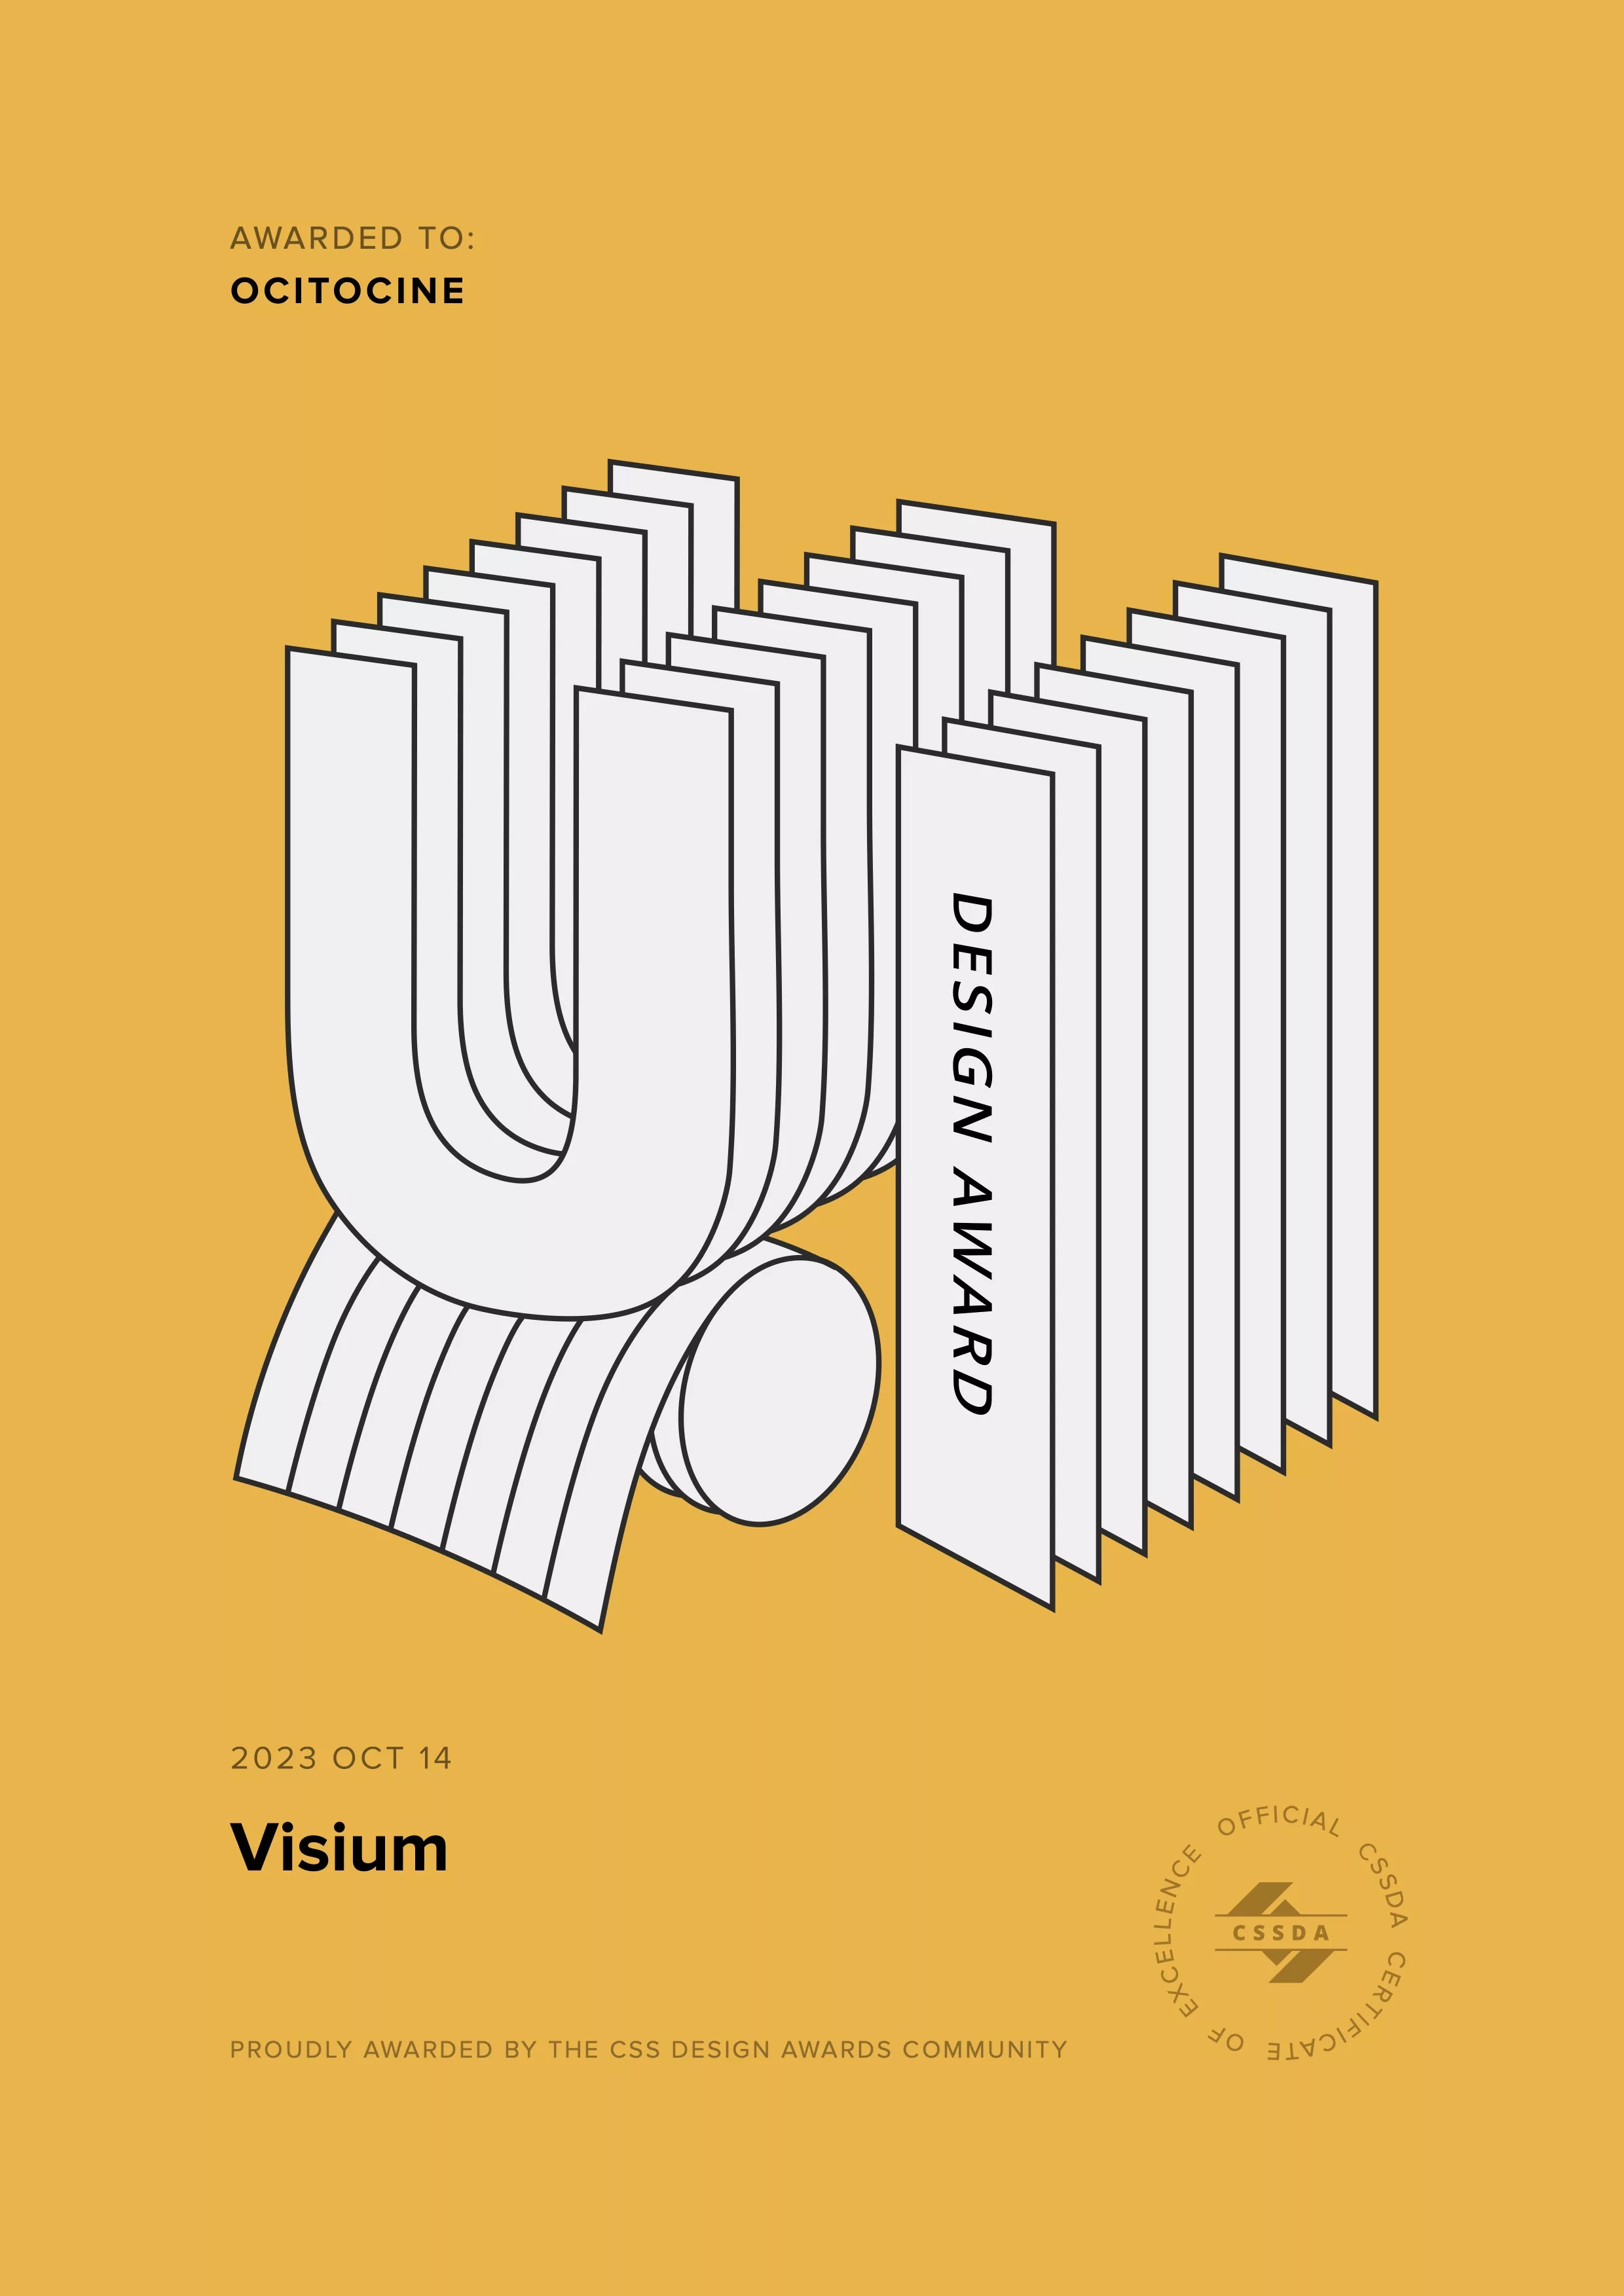 Ocitocine, agence créative web et branding, a remporté un prix "CSSDA UI Design Award" pour la réalisation du site web visium.ch